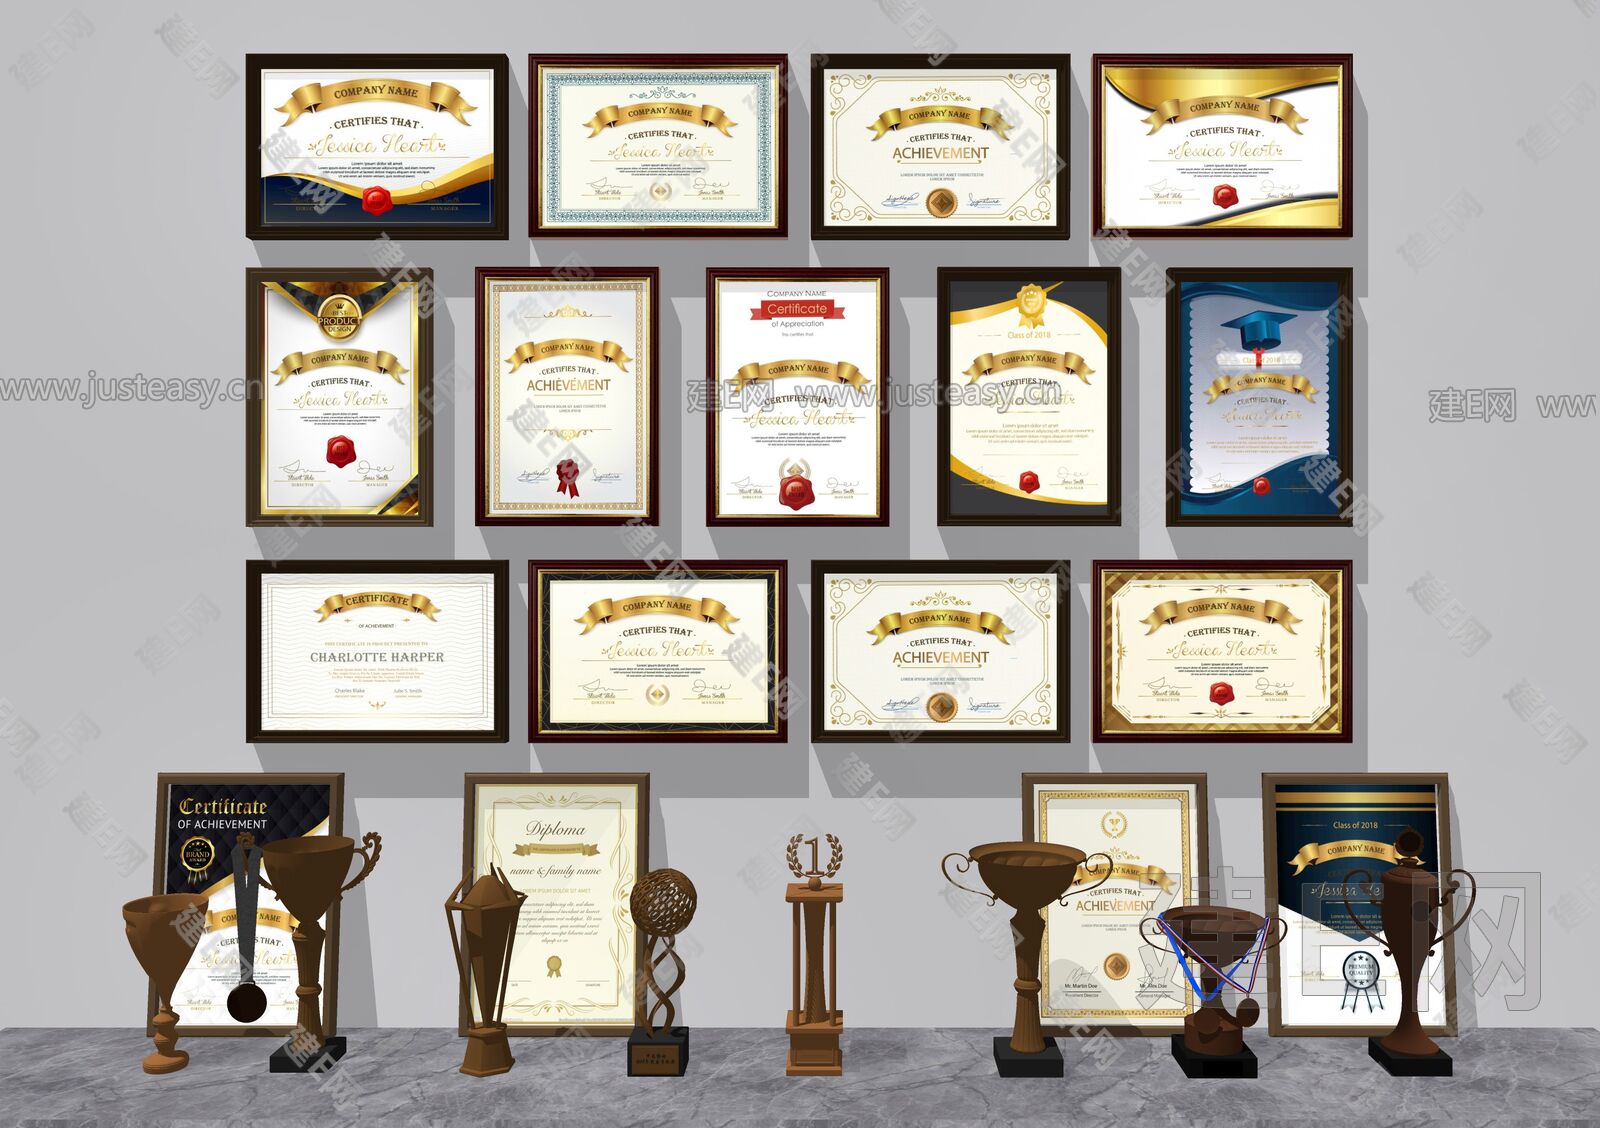 2018红色简约大气荣誉证书模板图片素材(AI格式)免费下载_荣誉证书|奖状大全-我图网